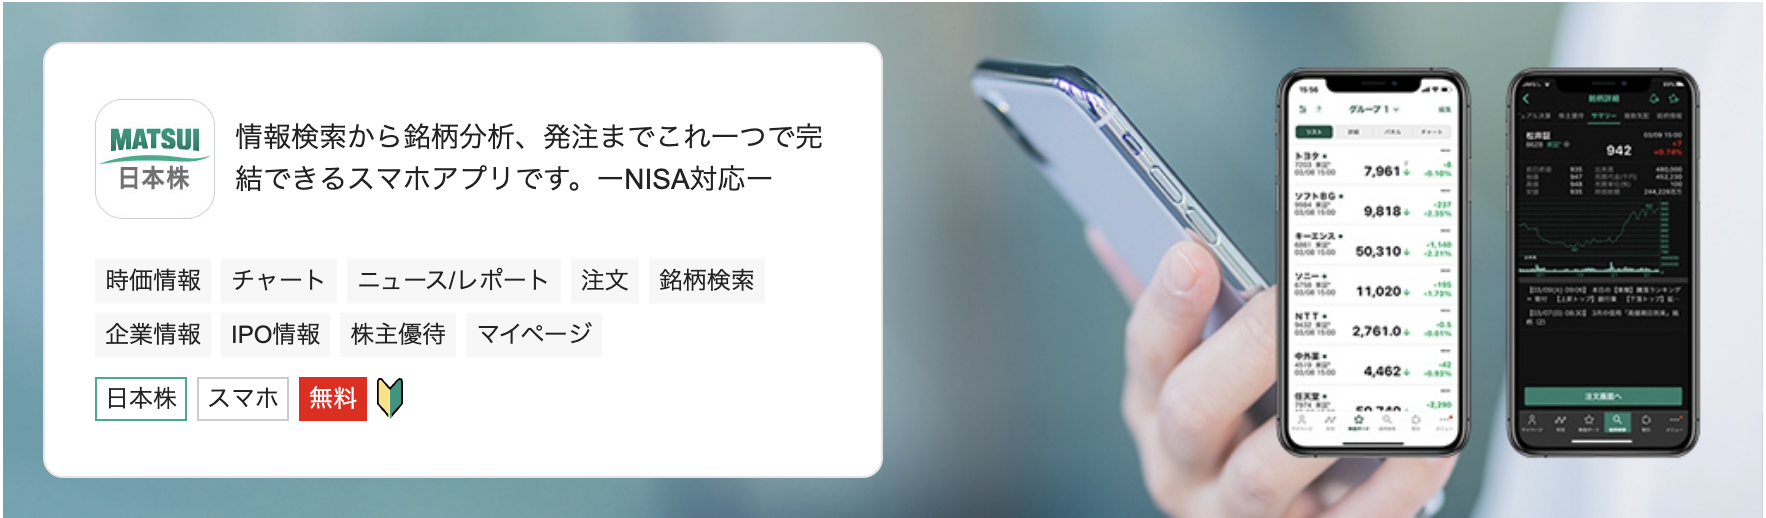 松井証券_日本株アプリ_公式サイト